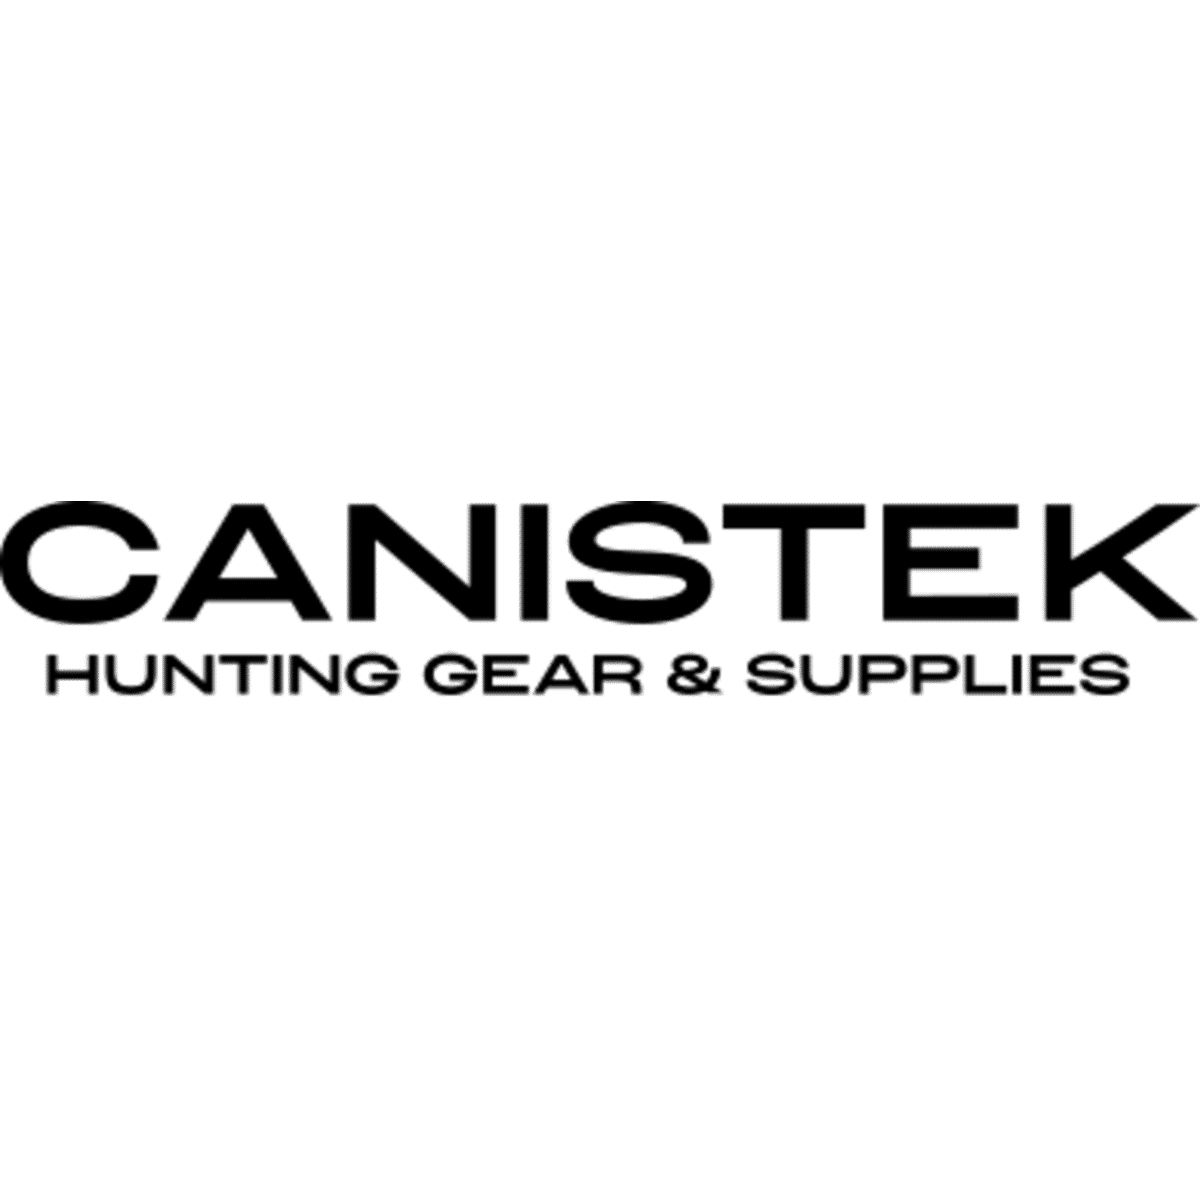 (c) Canistek.com